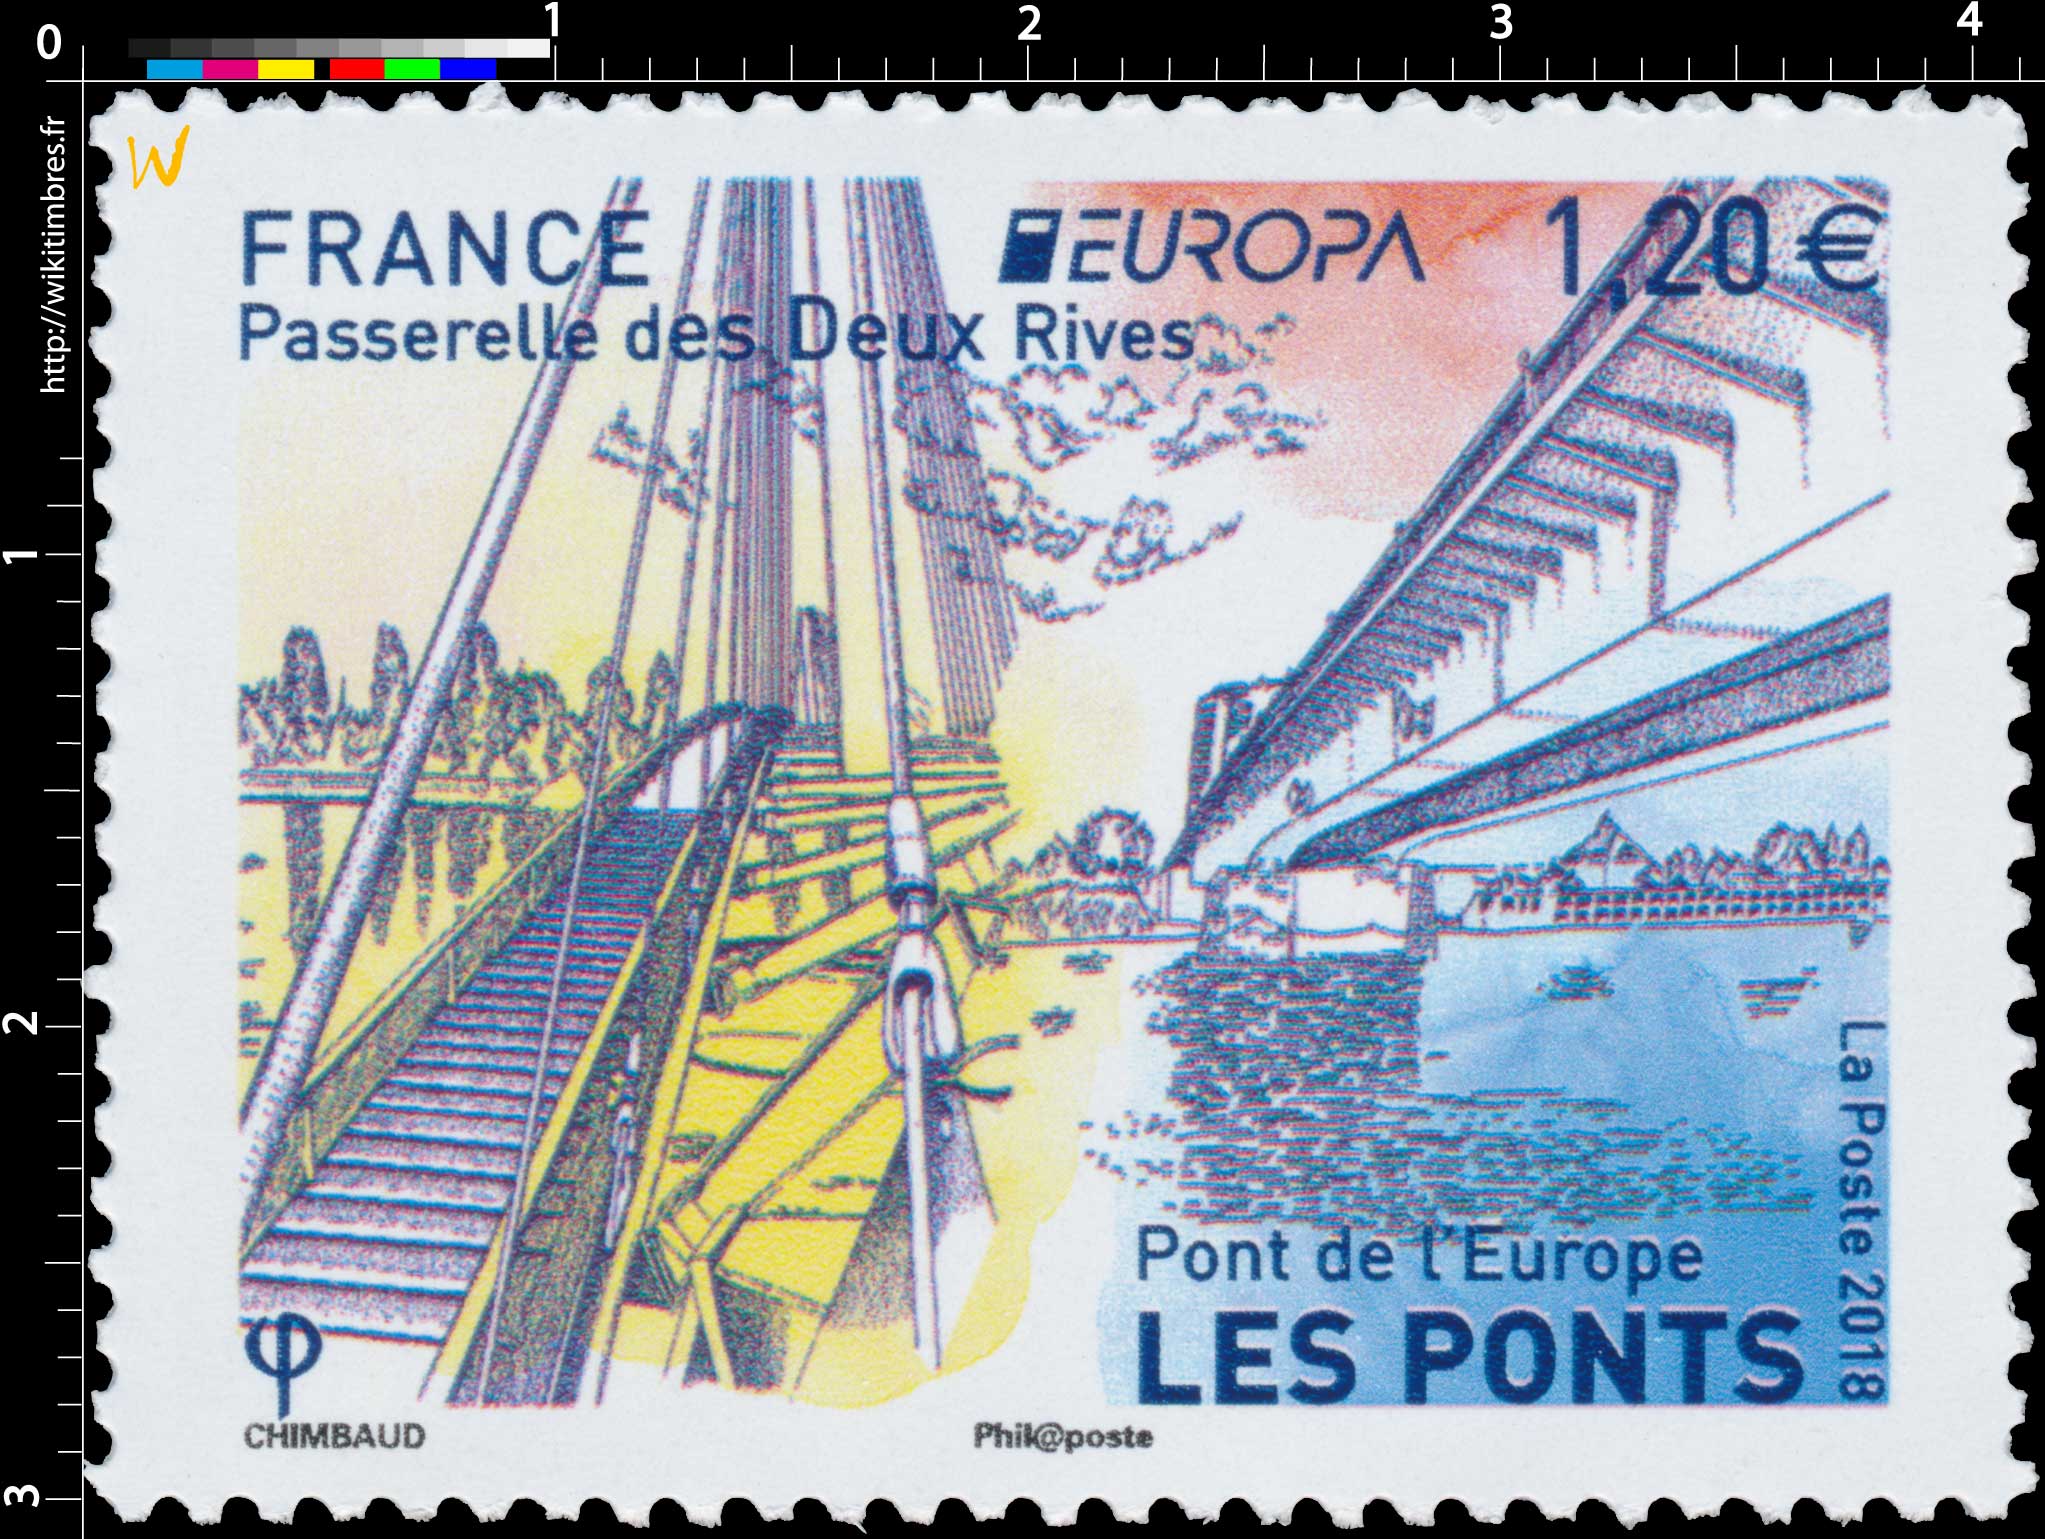 2018 Passerelle des Deux Rives - Europa - Pont de l'Europe - Les ponts